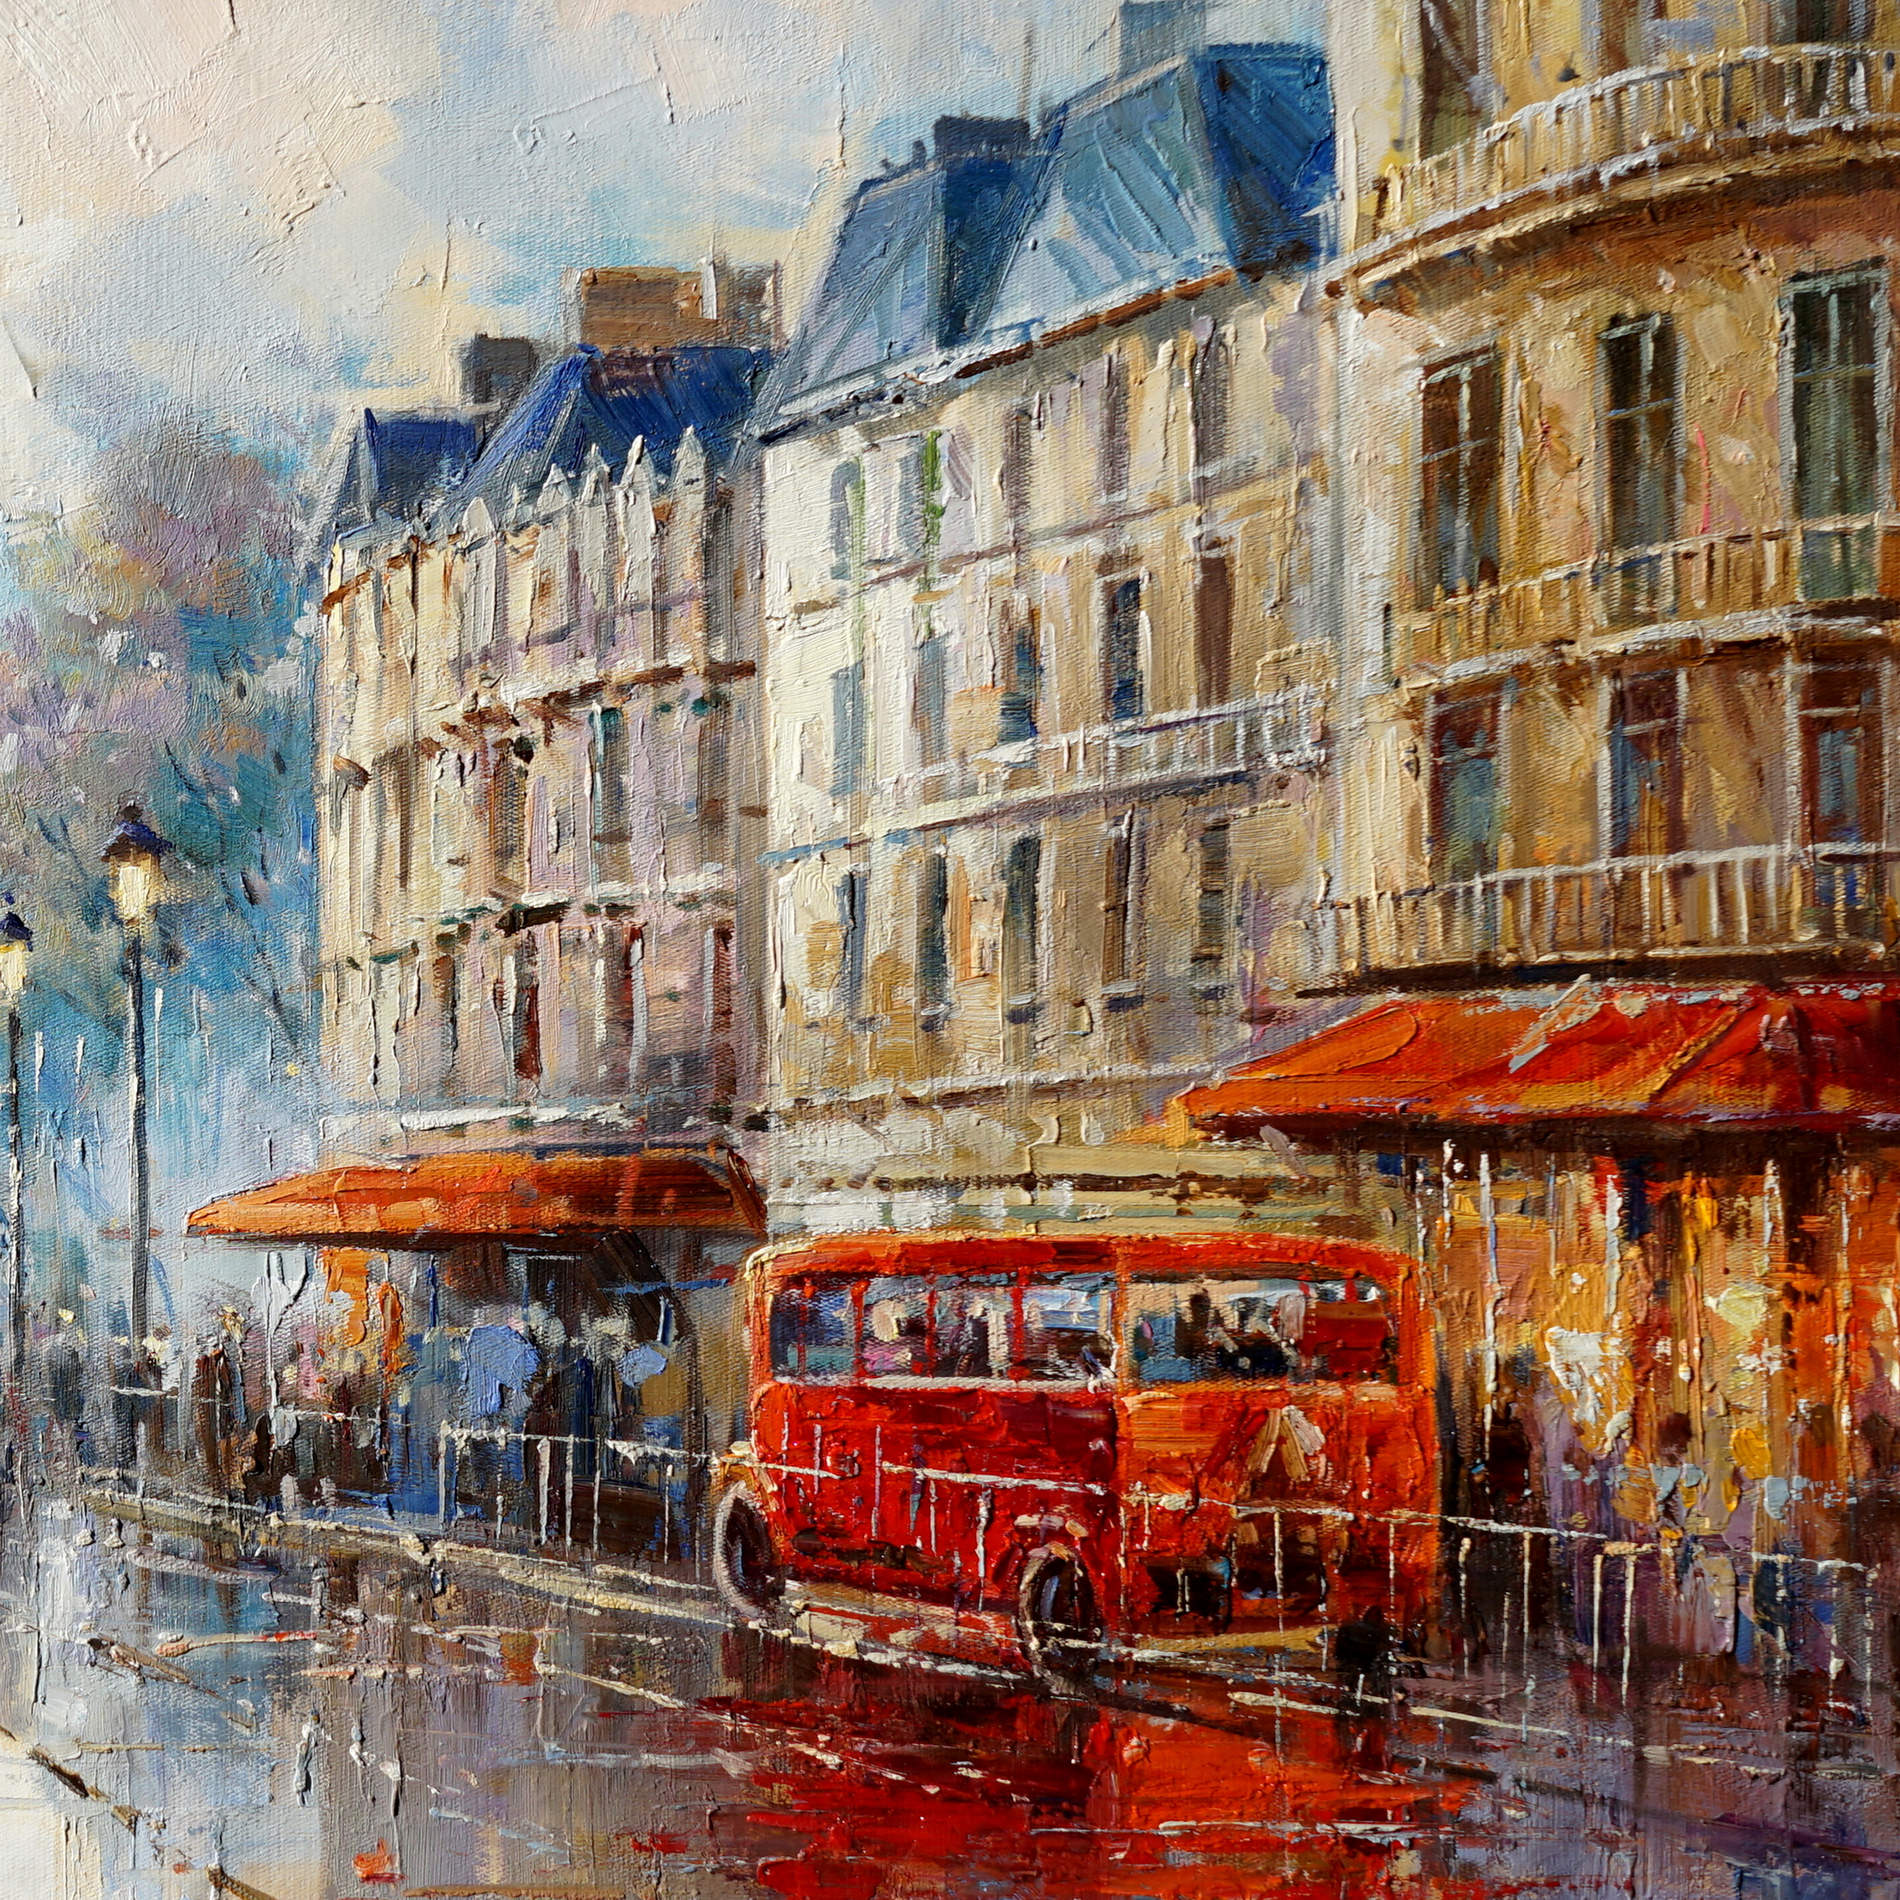 Hand painted Paris in the rain Eiffel Tower 60x120cm